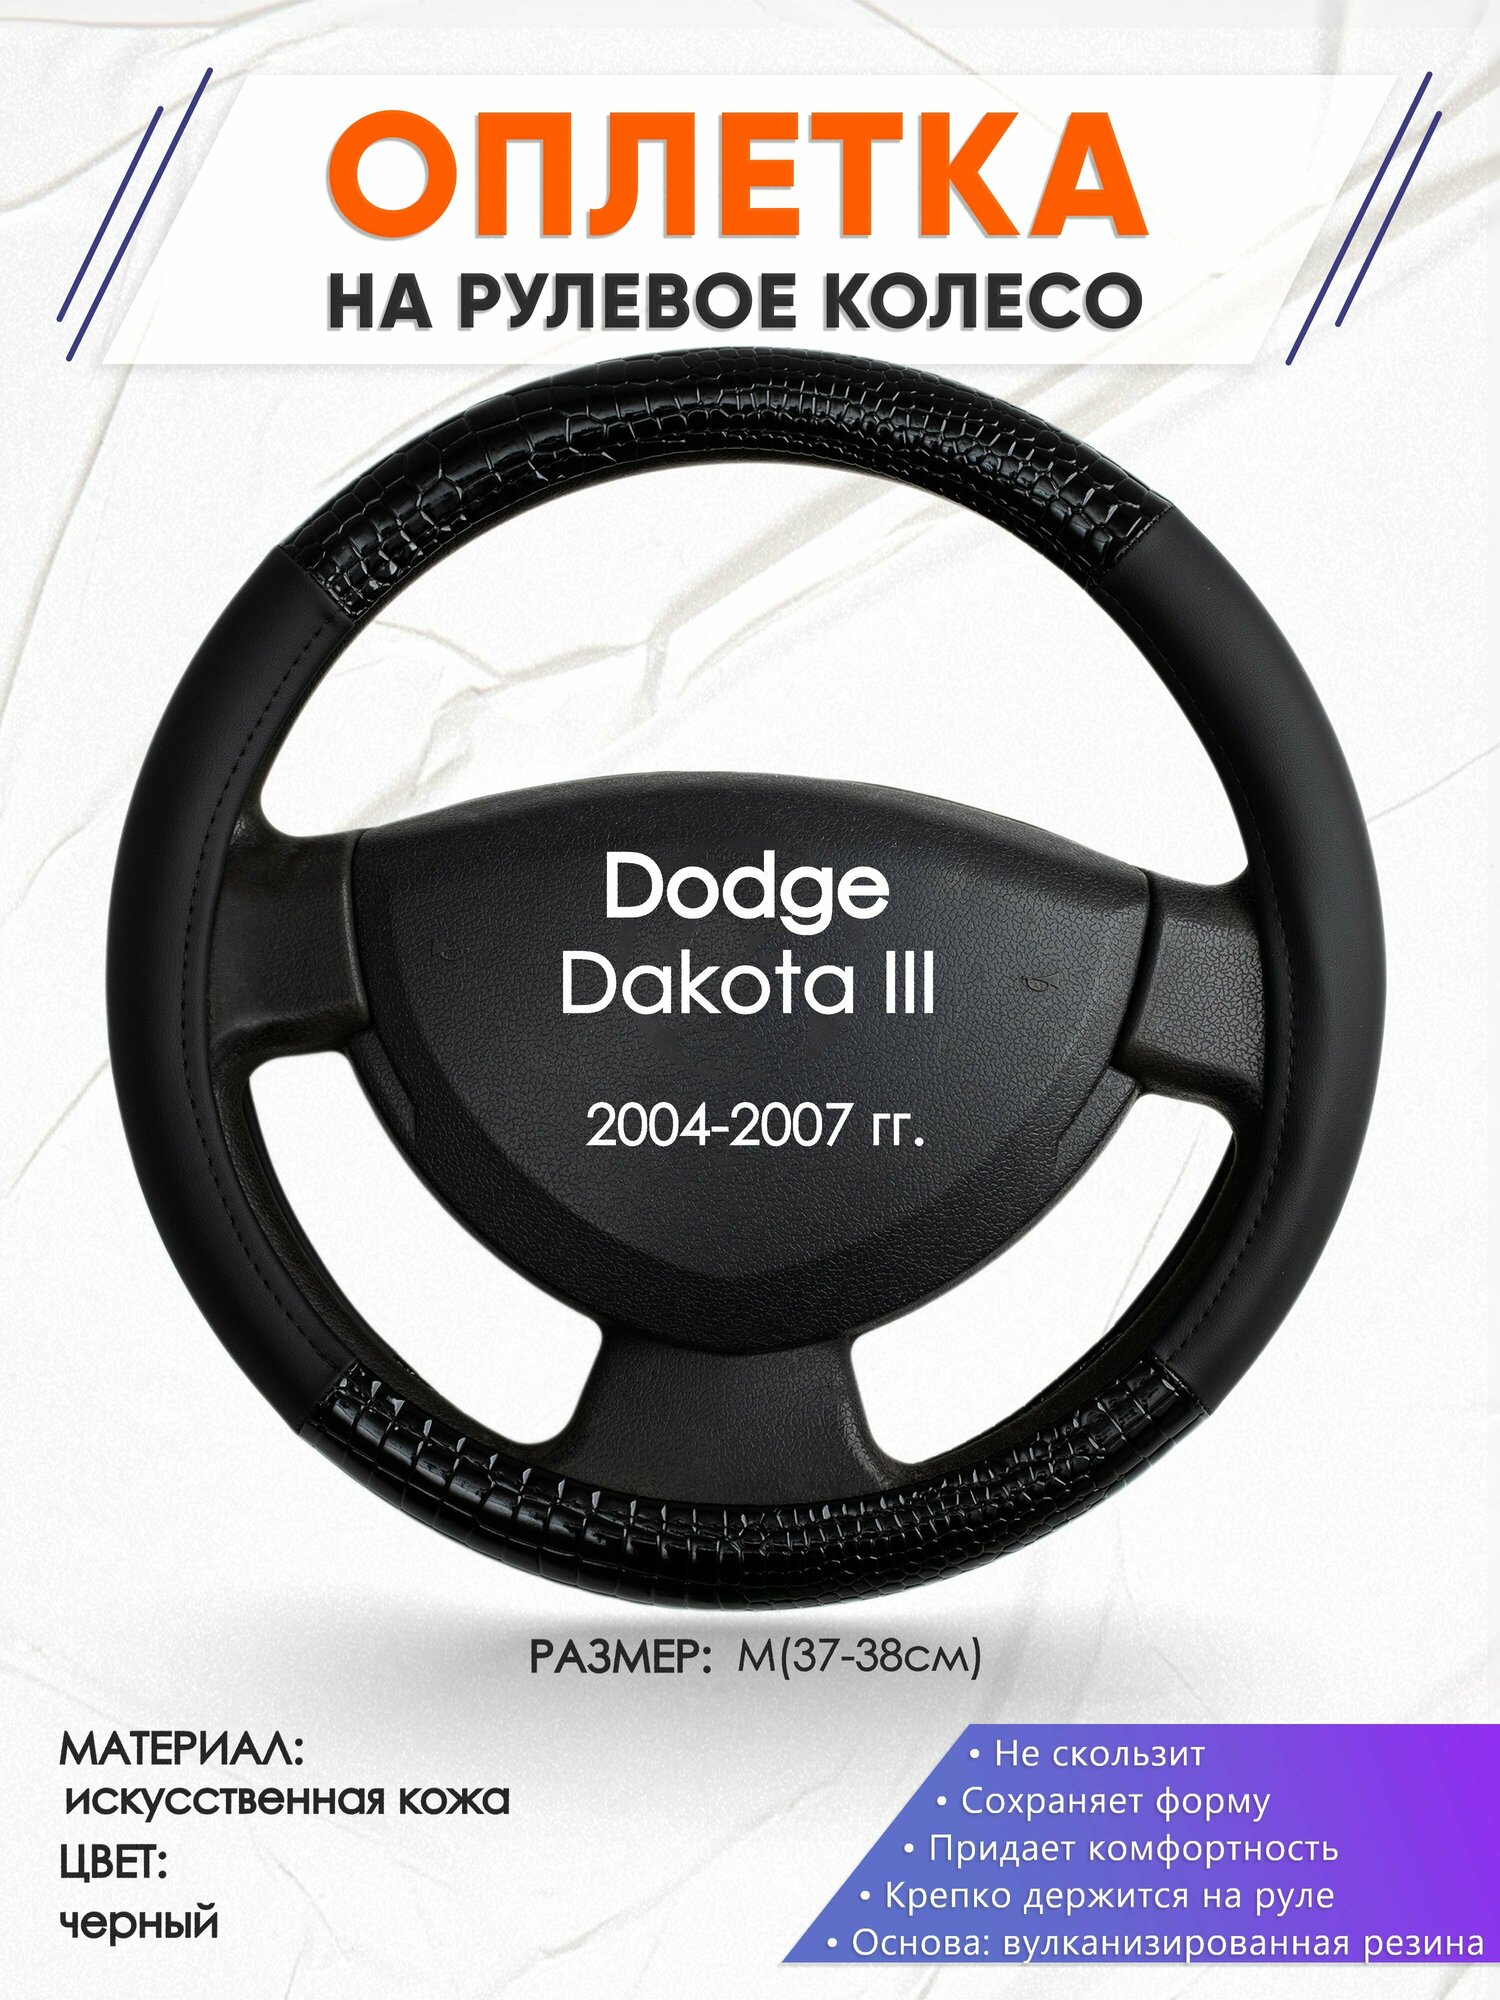 Оплетка наруль для Dodge Dakota 3(Додж Дакота 3) 2004-2007 годов выпуска, размер M(37-38см), Искусственная кожа 83